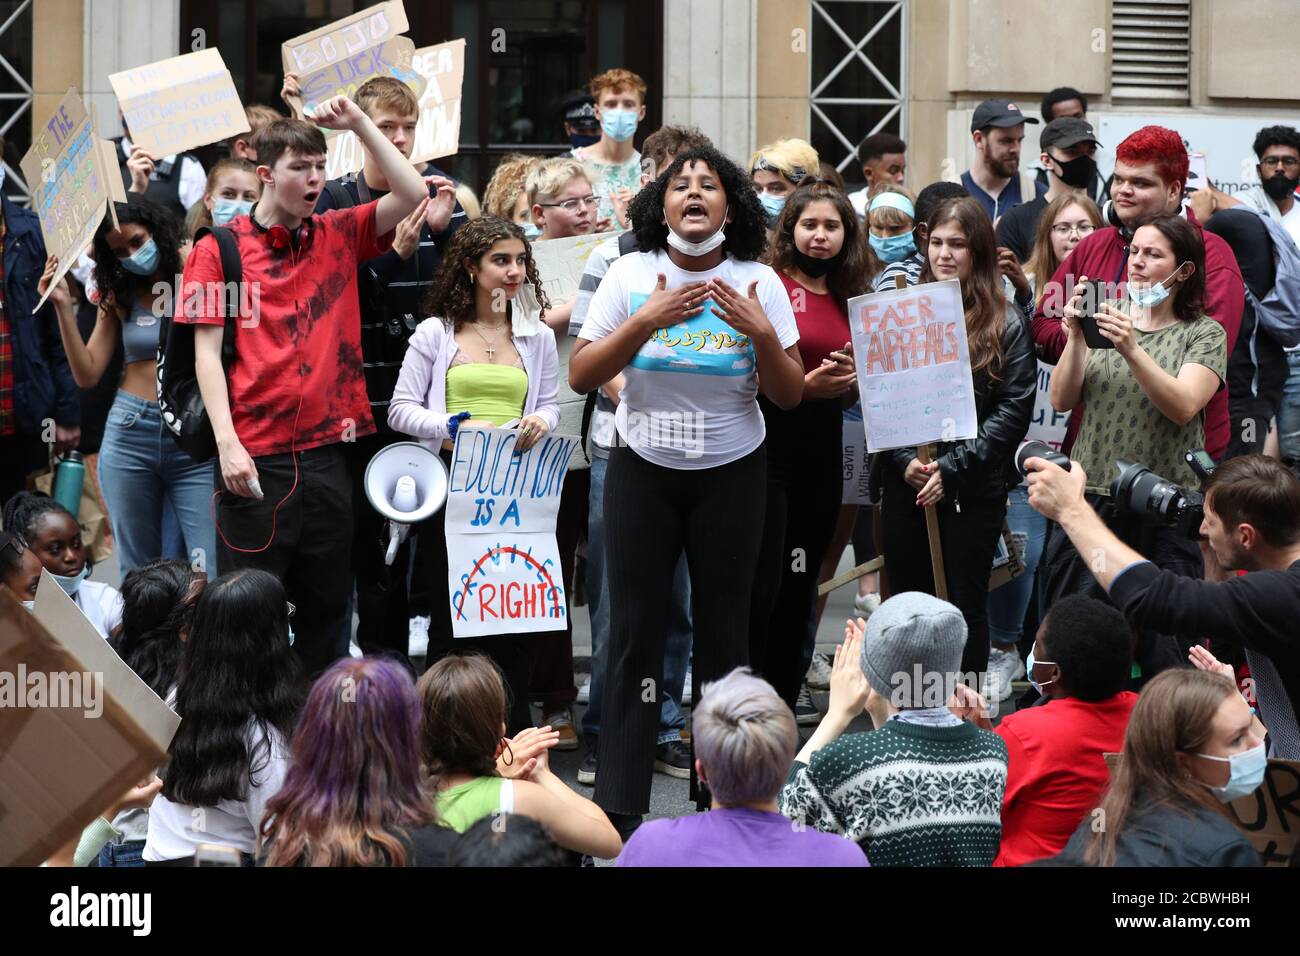 Als Reaktion auf die Herabstufung der ERGEBNISSE AUF DER EBENE A nehmen Menschen an einem Protest vor dem Department for Education, London, Teil. Stockfoto